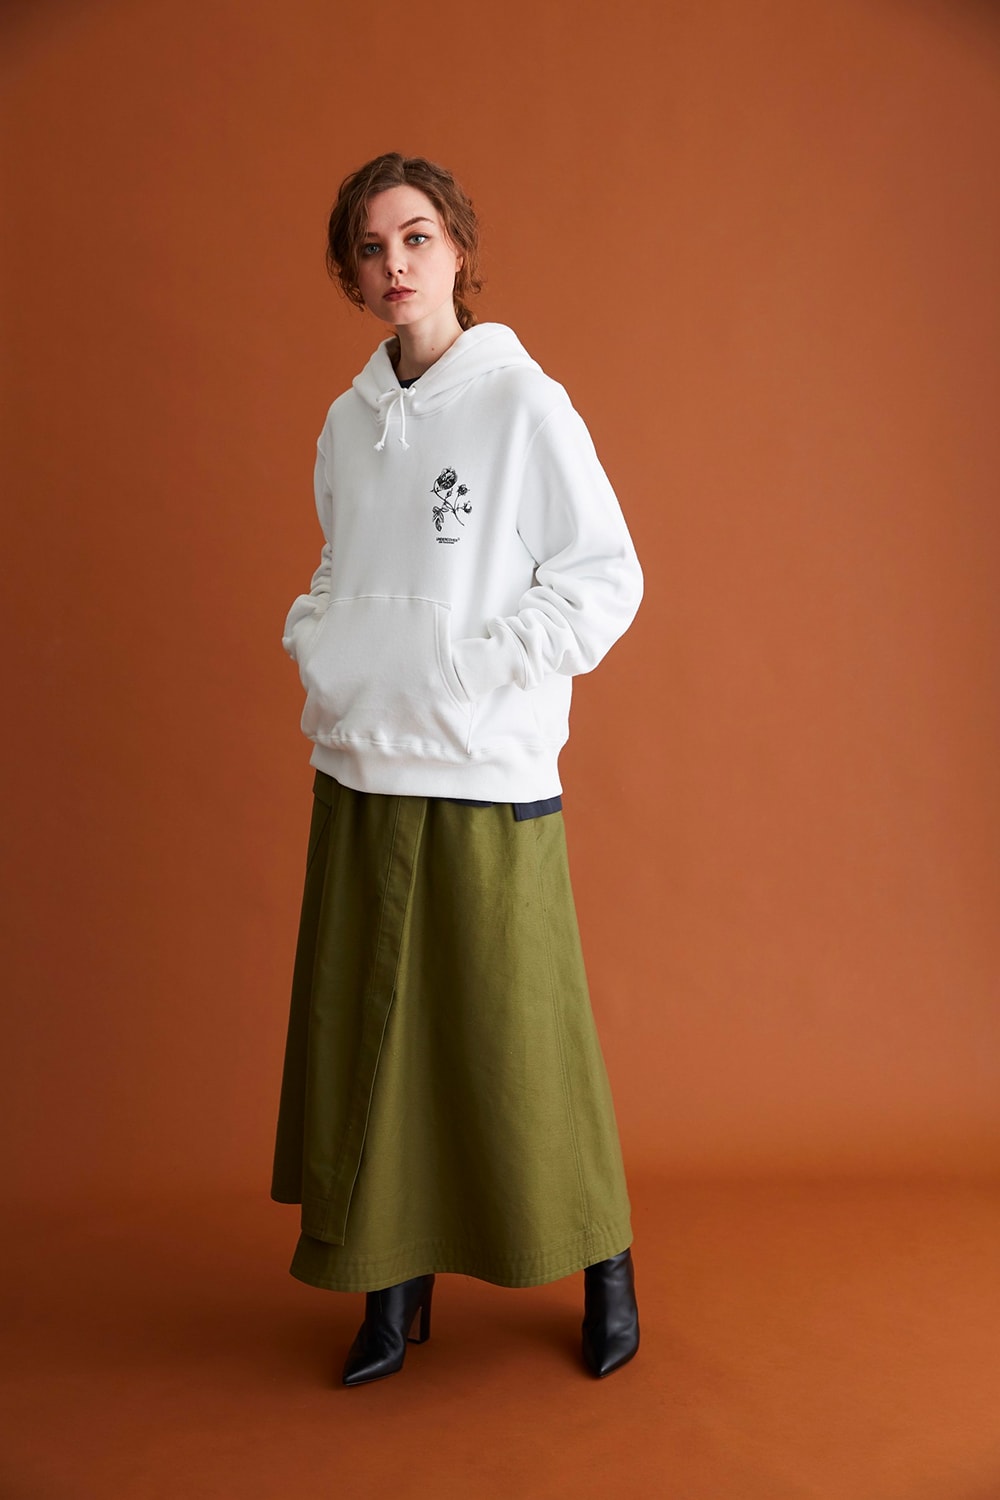 준 타카하시의 언더커버 x 리타 10주년 기념 협업 컬렉션 공개 및 발매 정보, 티셔츠, 후디 